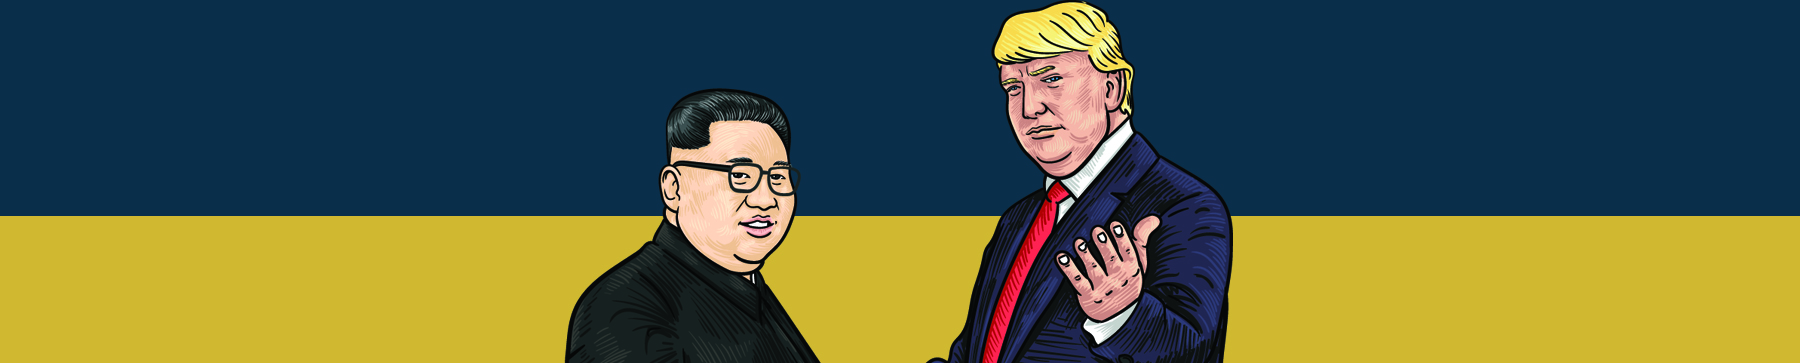 Donald Trump va Kim Jong un